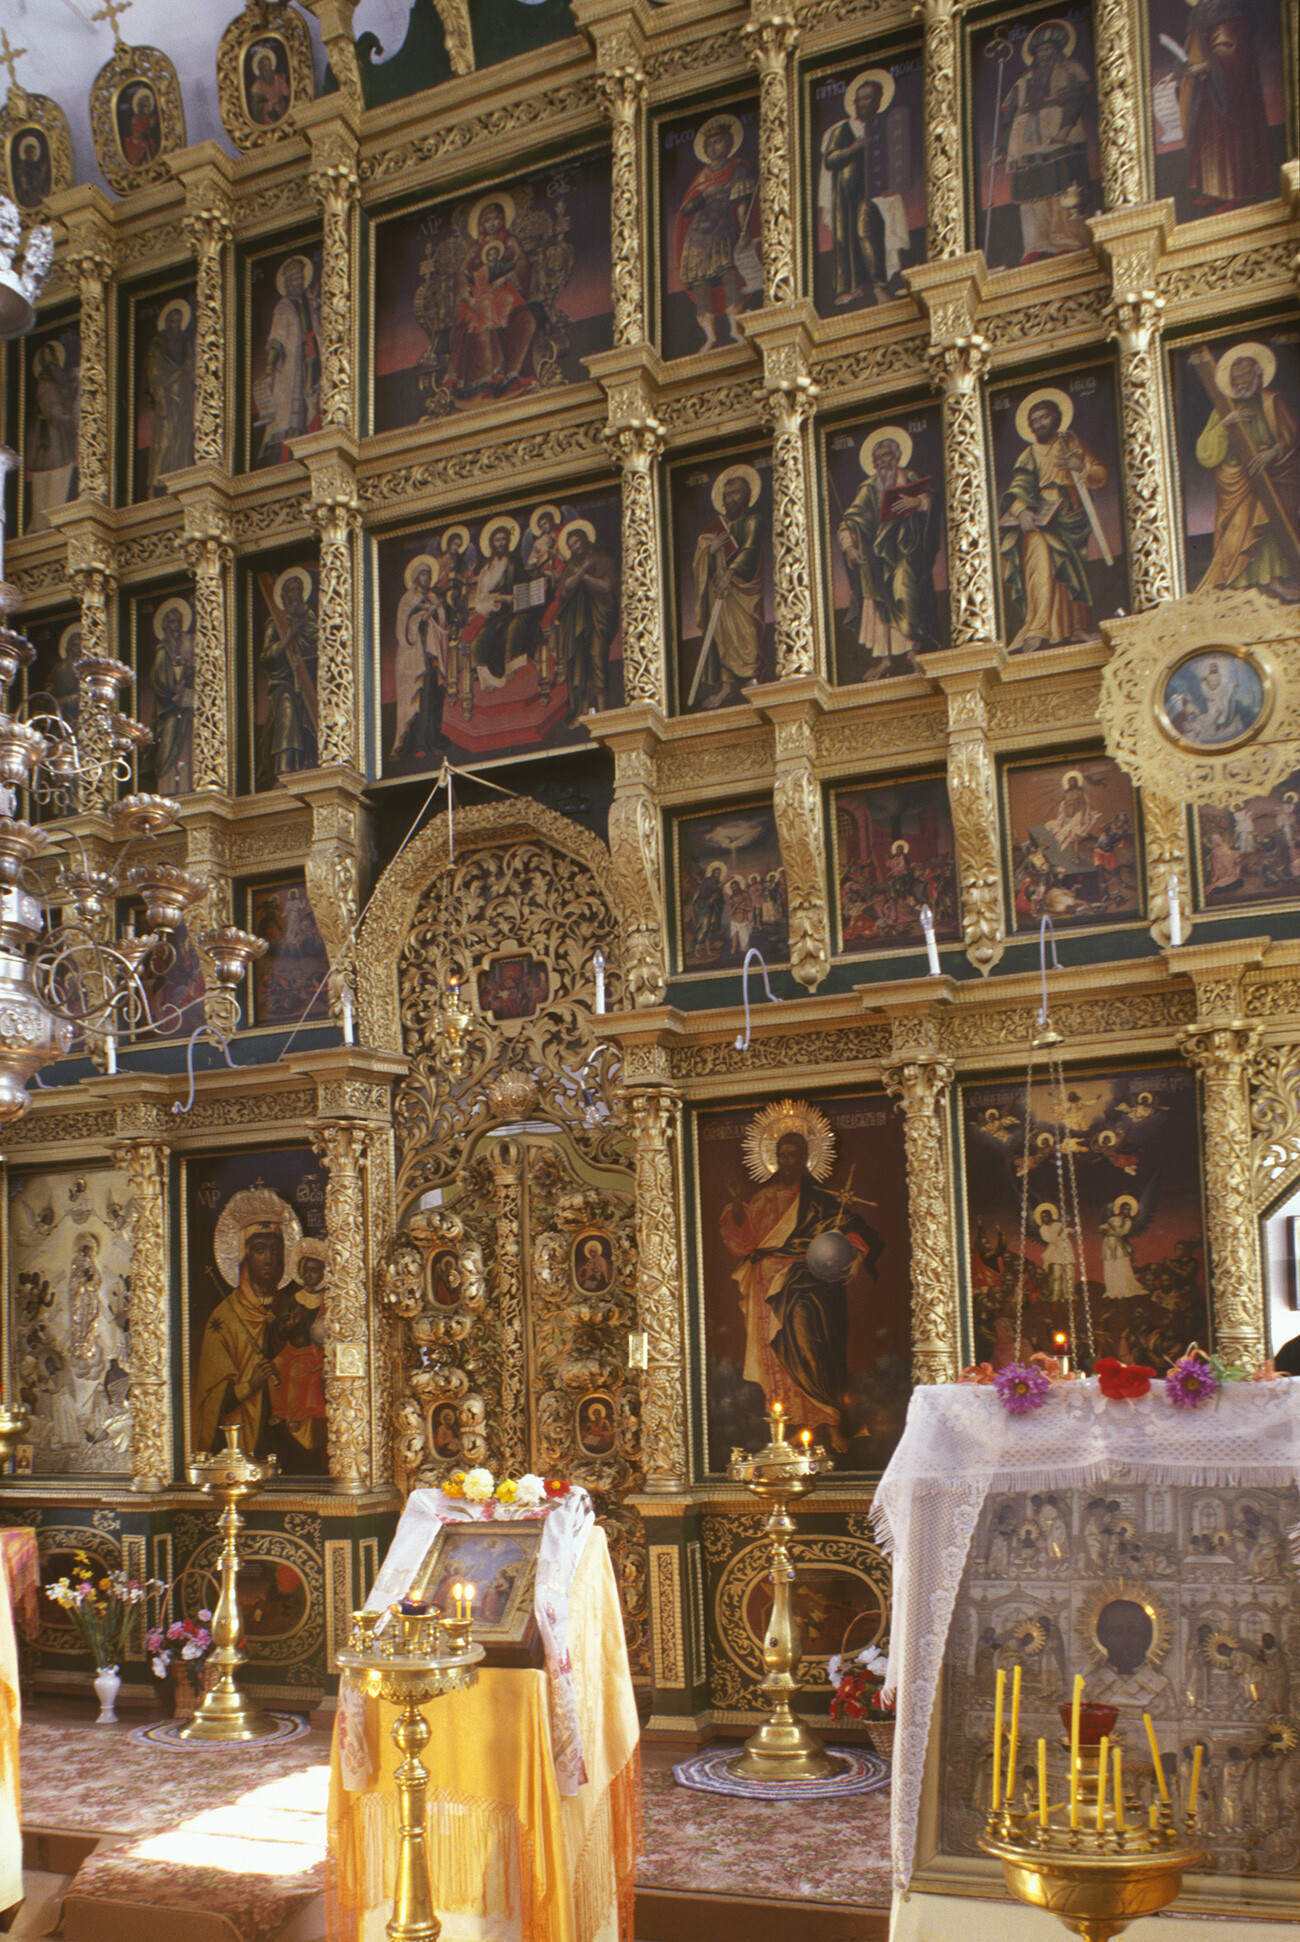 Iglesia de San Juan el Divino. Interior, pantalla de iconos. 13 de agosto de 2000